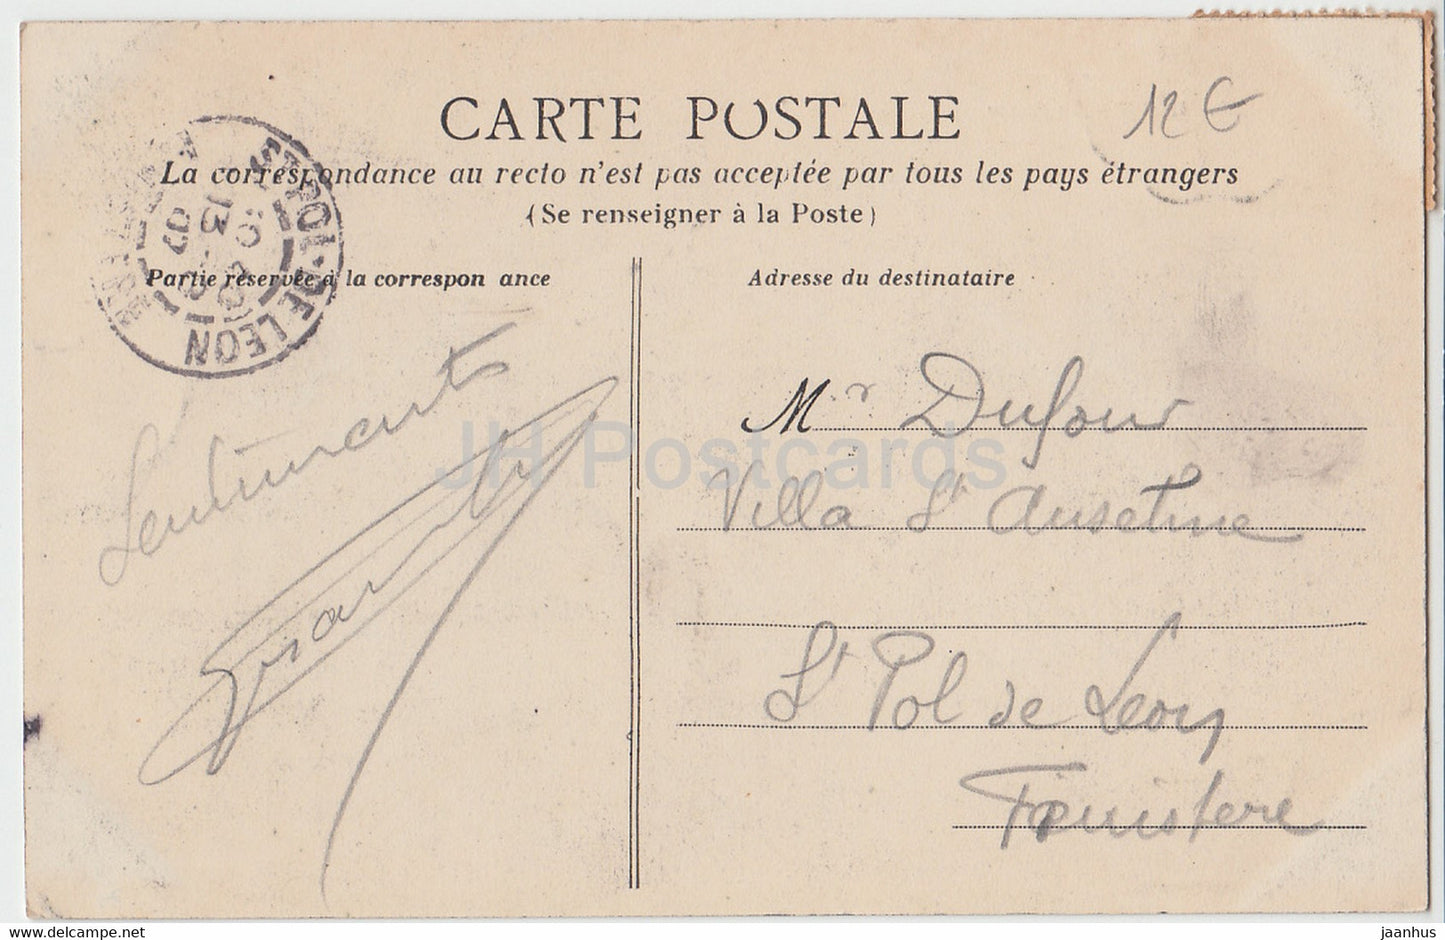 Brest - La Saone - Schiff - alte Postkarte - 1907 - Frankreich - gebraucht